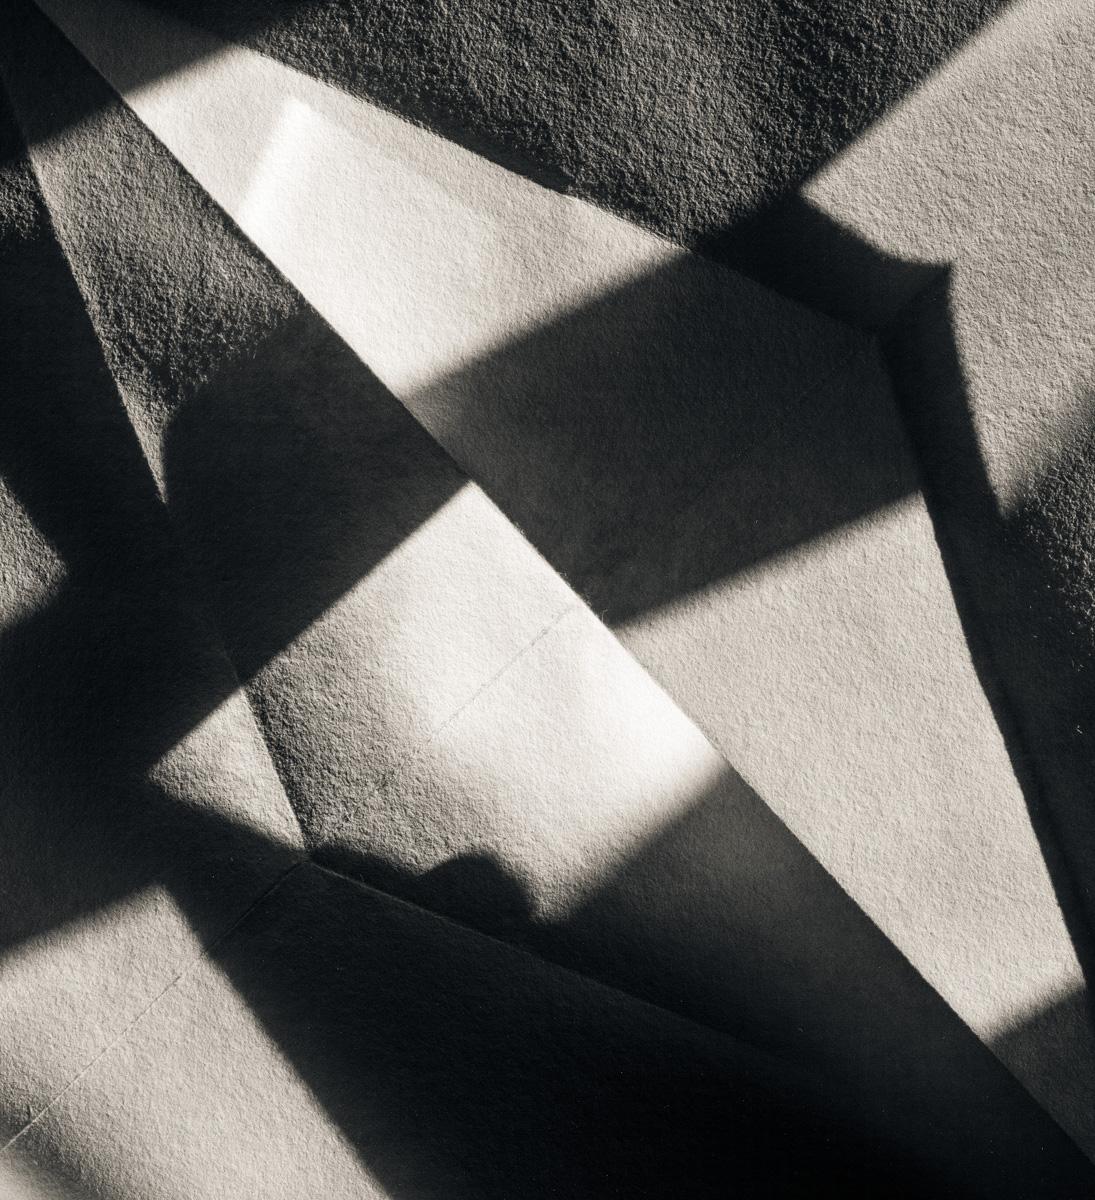  Photographie abstraite noire et blanche - Origami Folds n° 15 